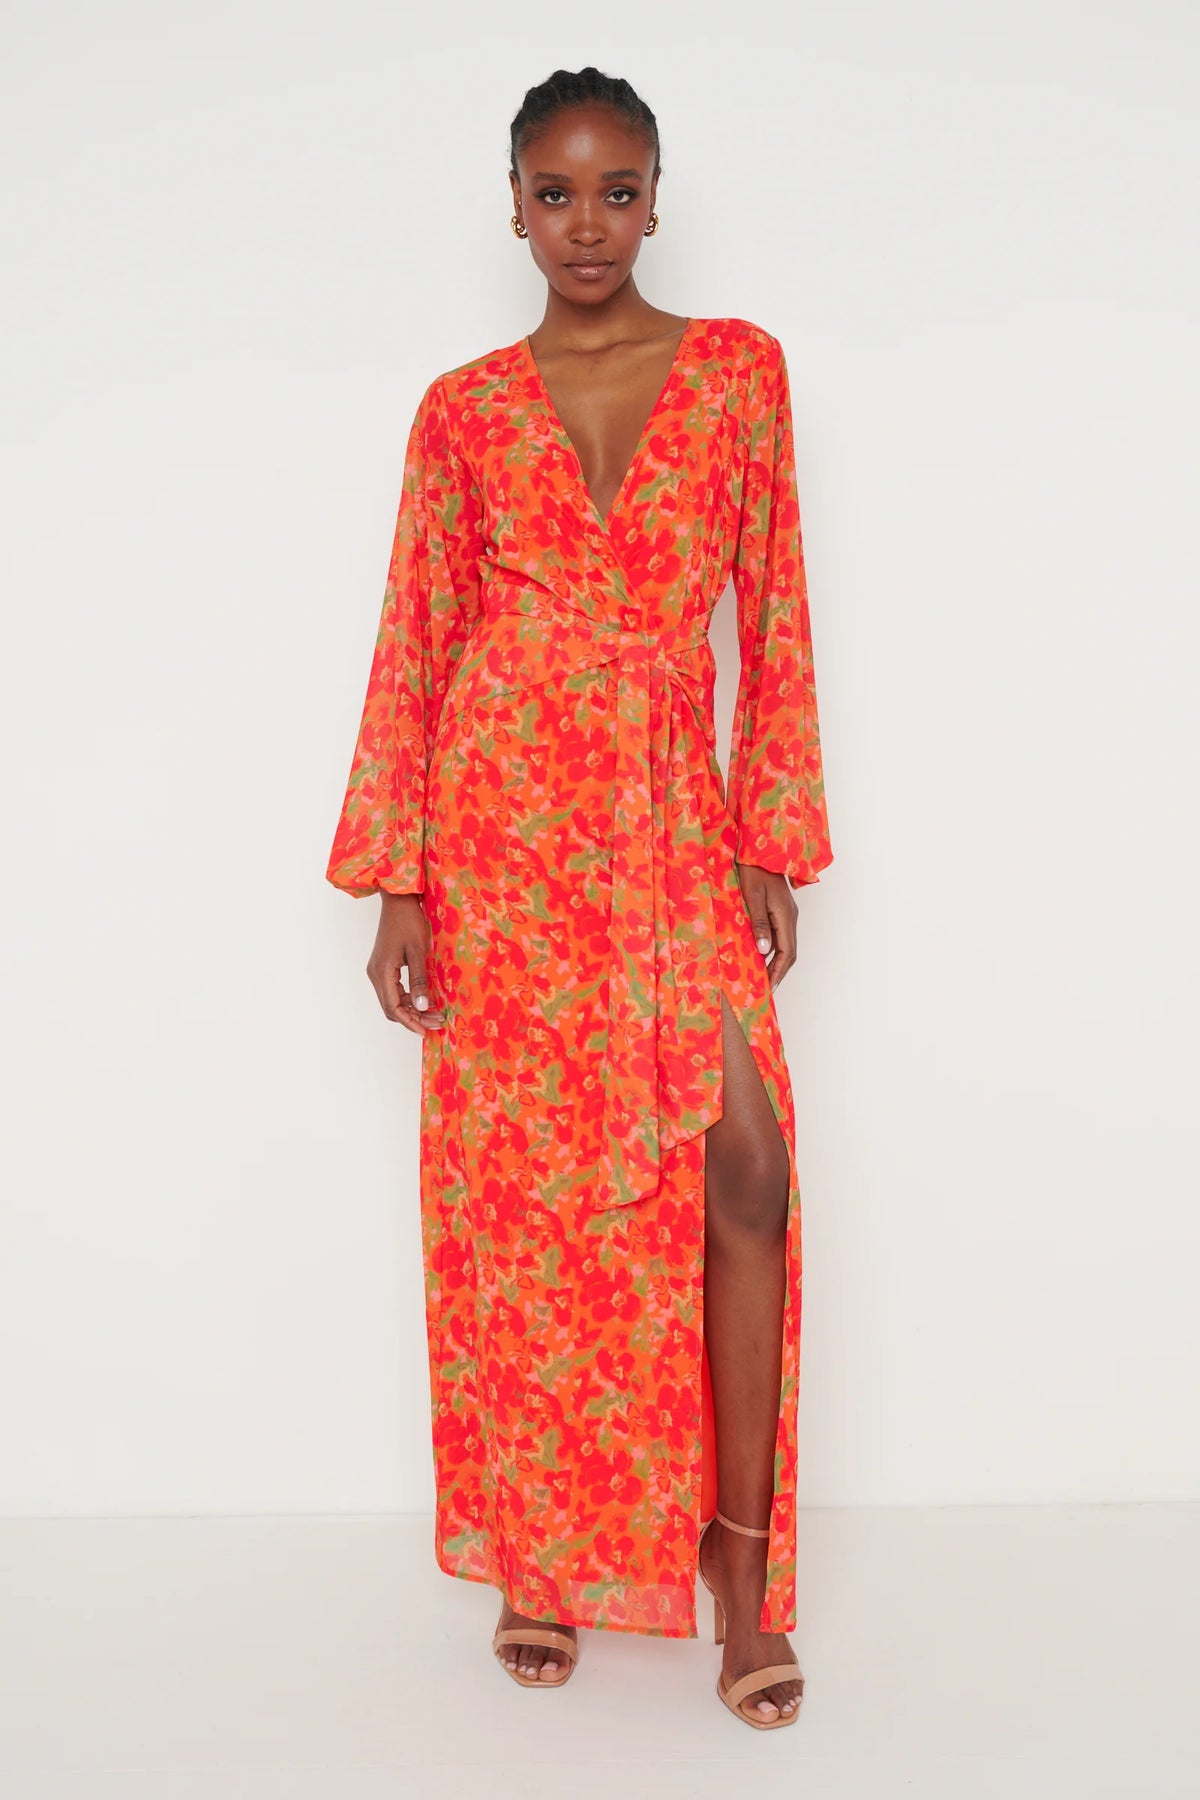 Alexis Knot Drape Dress | Ros Oir Boutique